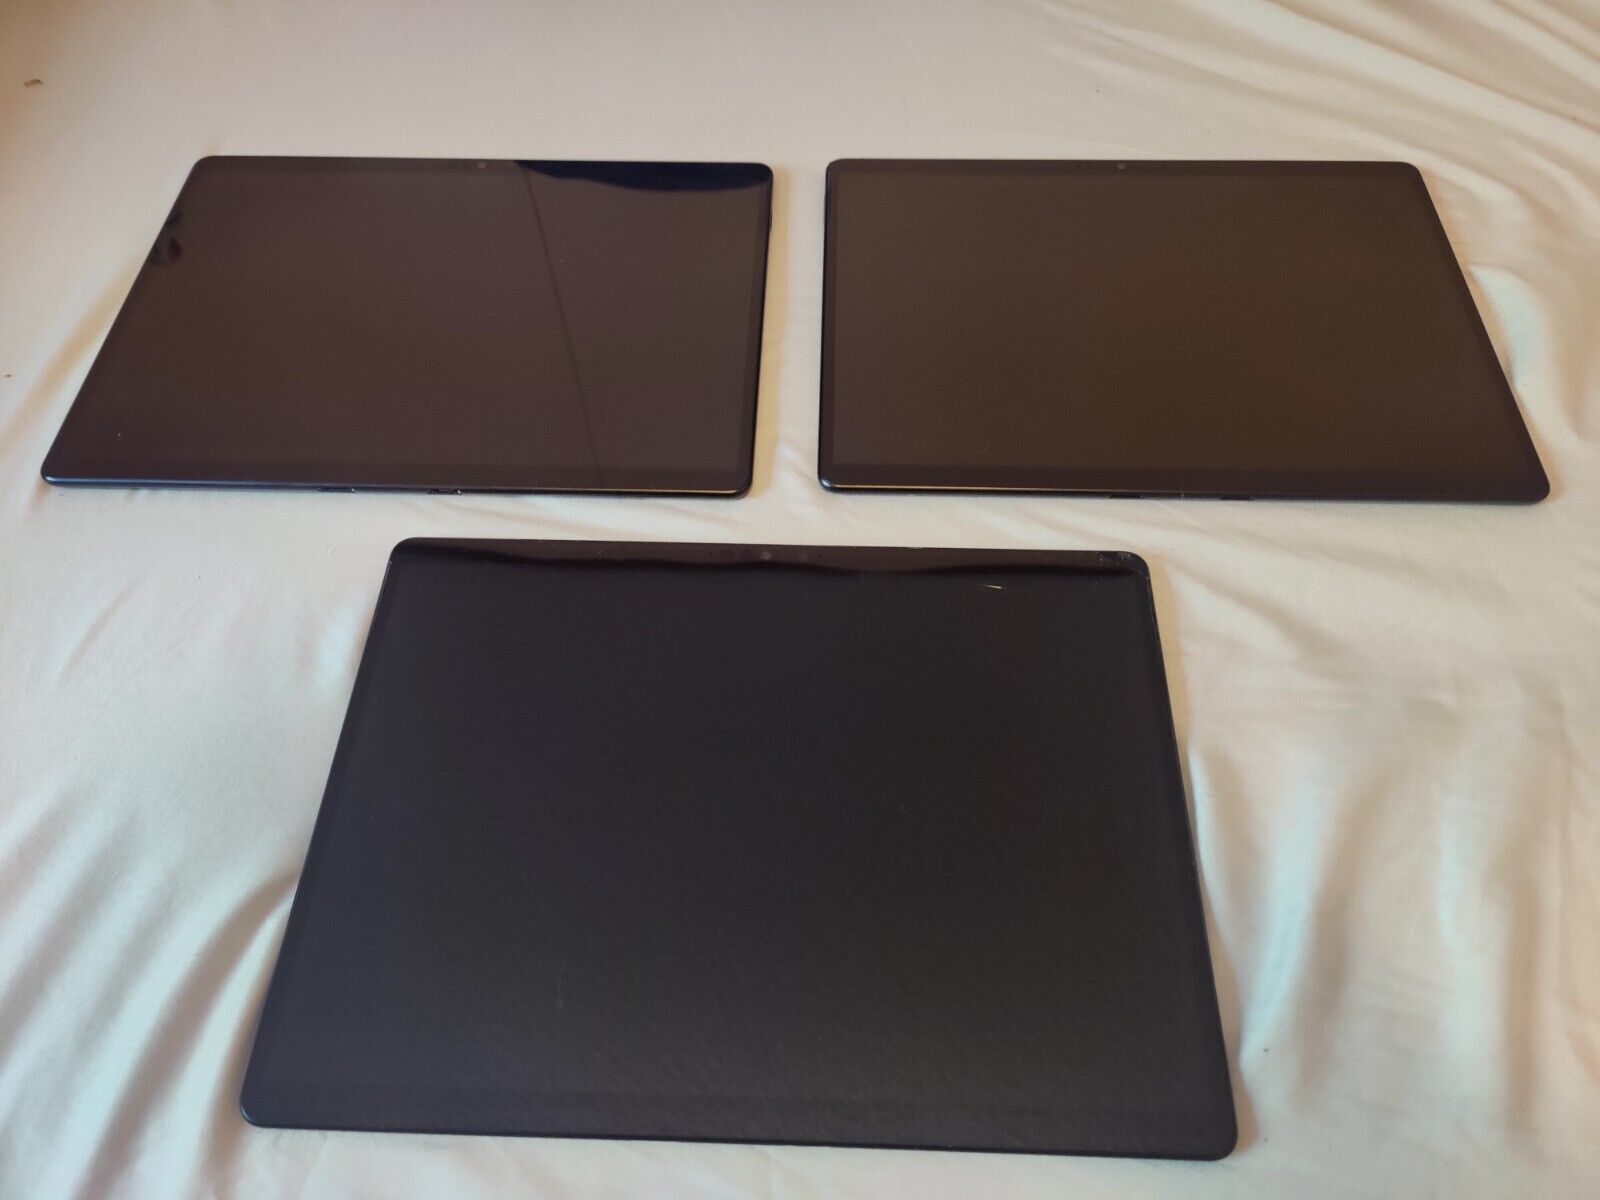 Lot of 3 Surface Pro X, 2 x SQ1 8gb, 1 x SQ2 16gb LTE